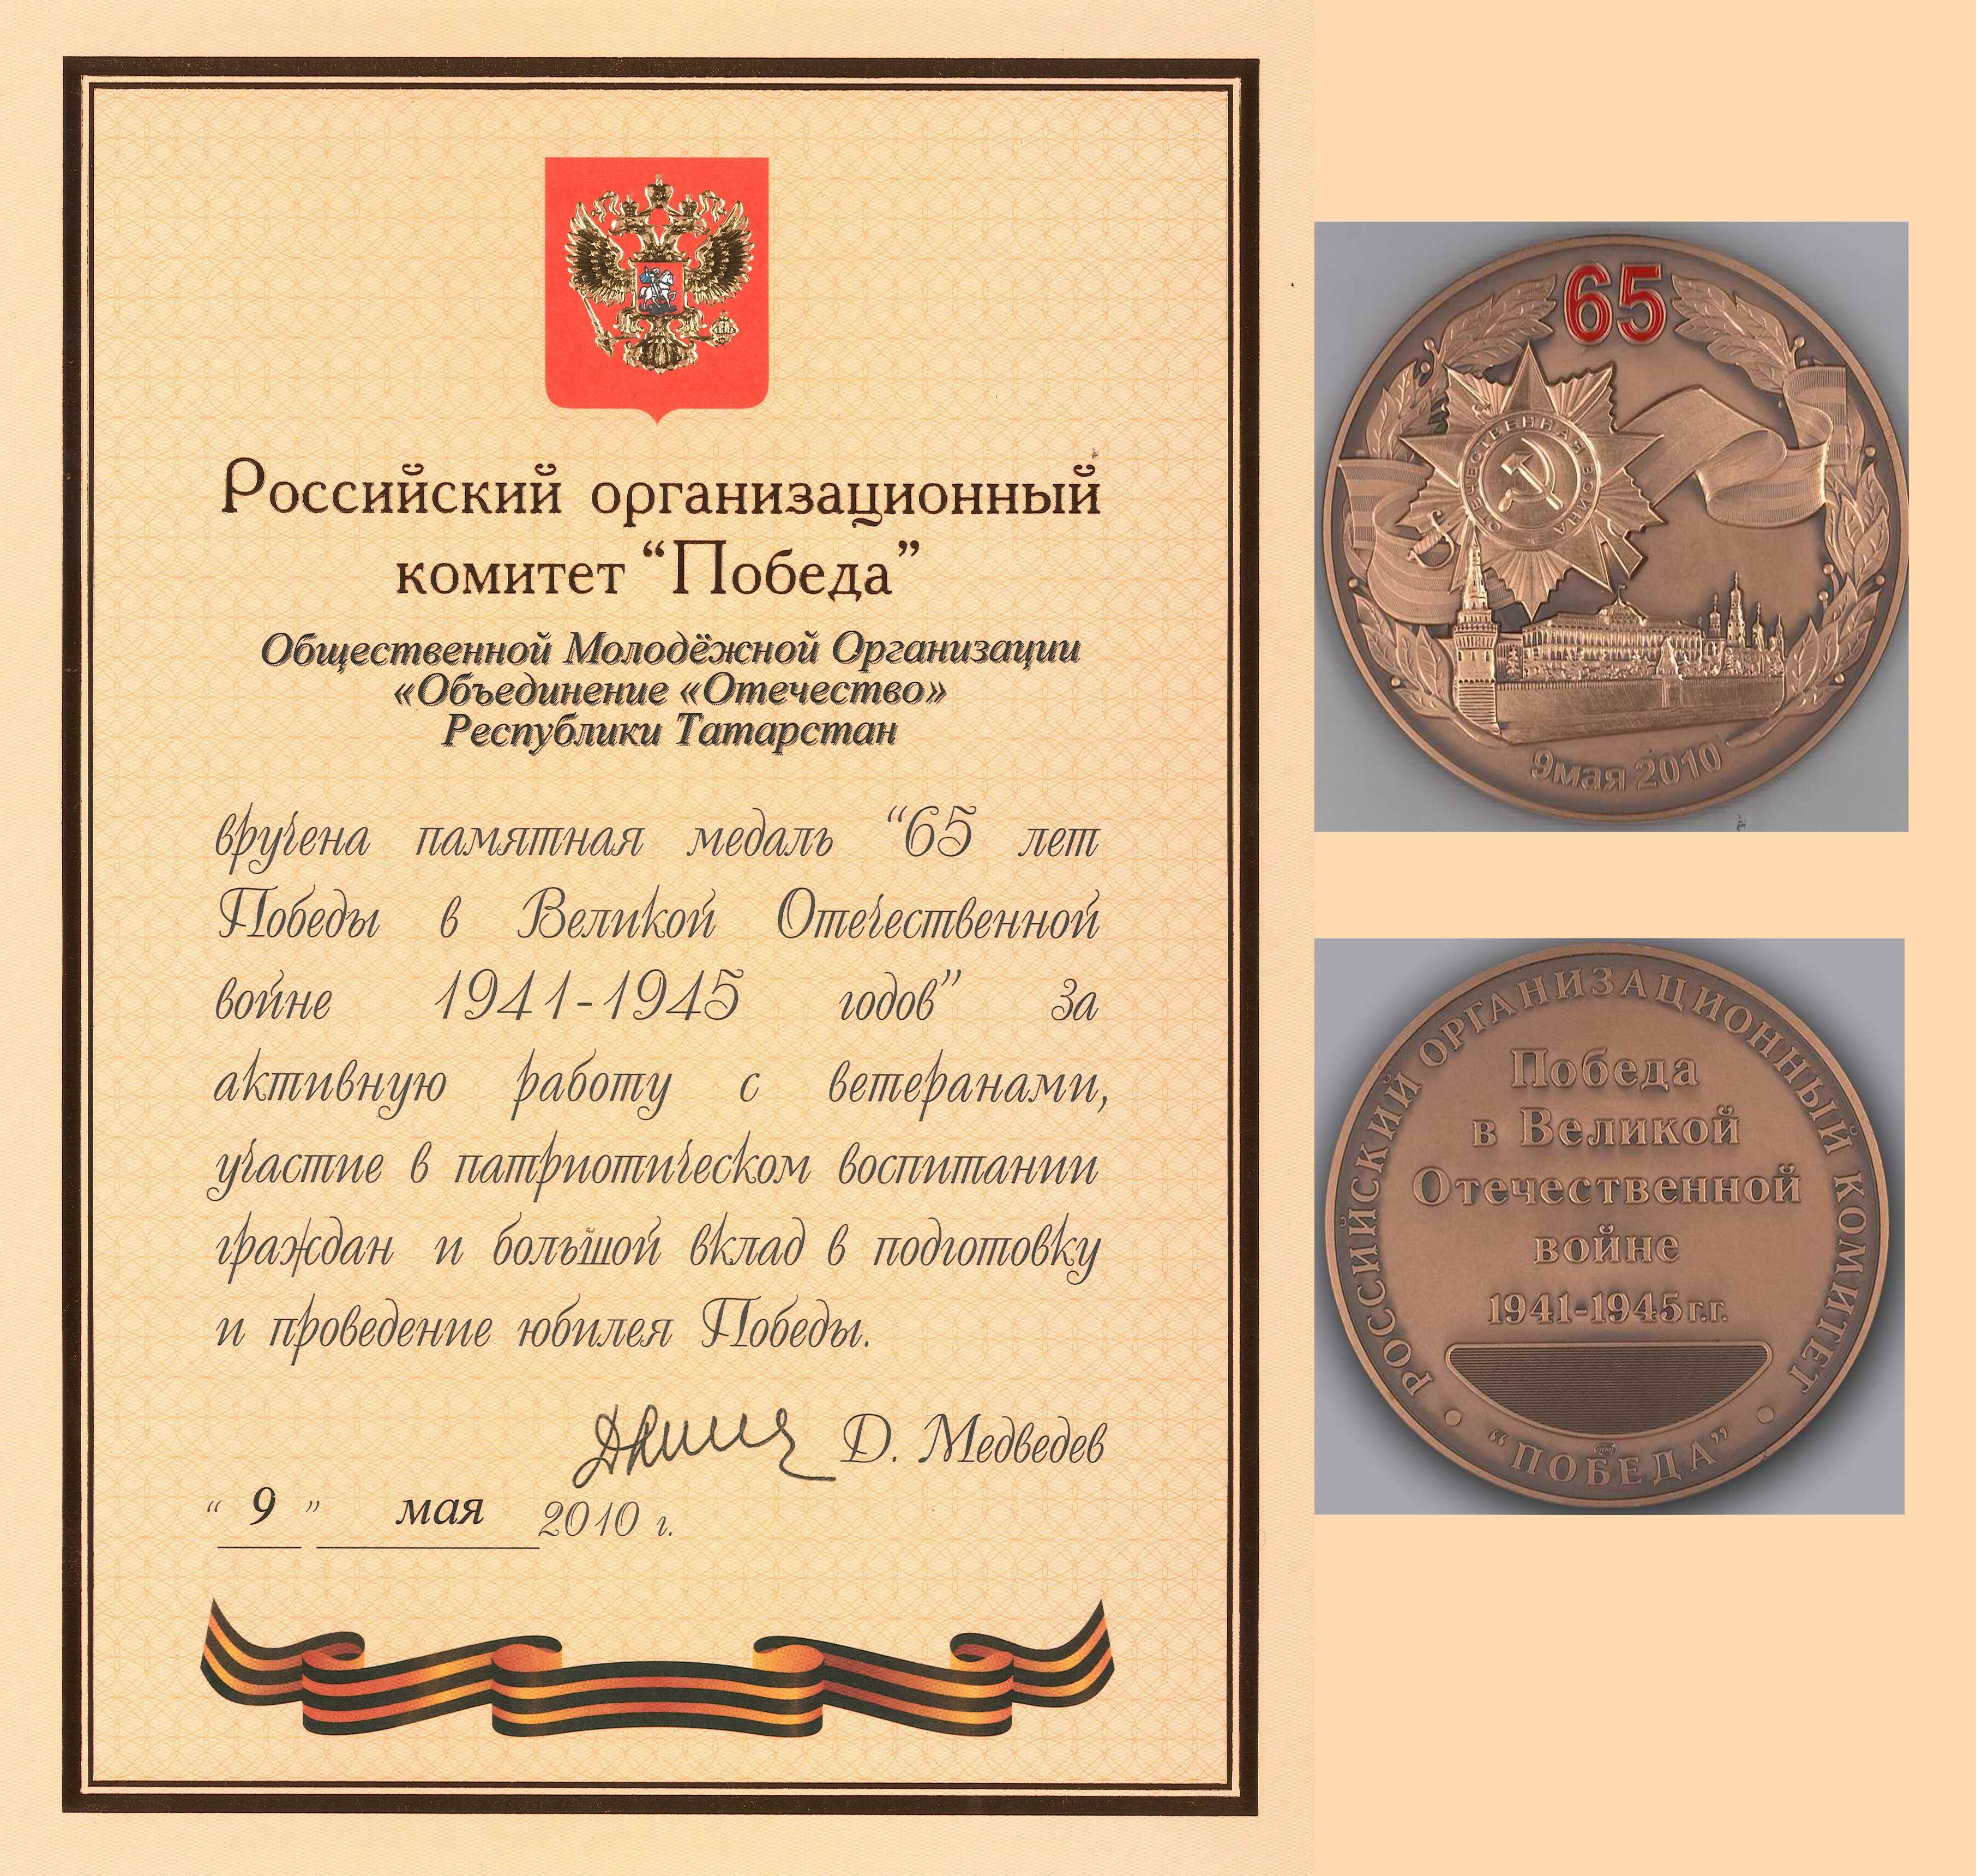 В 2010 году РОМО «Объединение «Отечество» РТ награждена памятной медалью Российского организационного комитета «Победа».